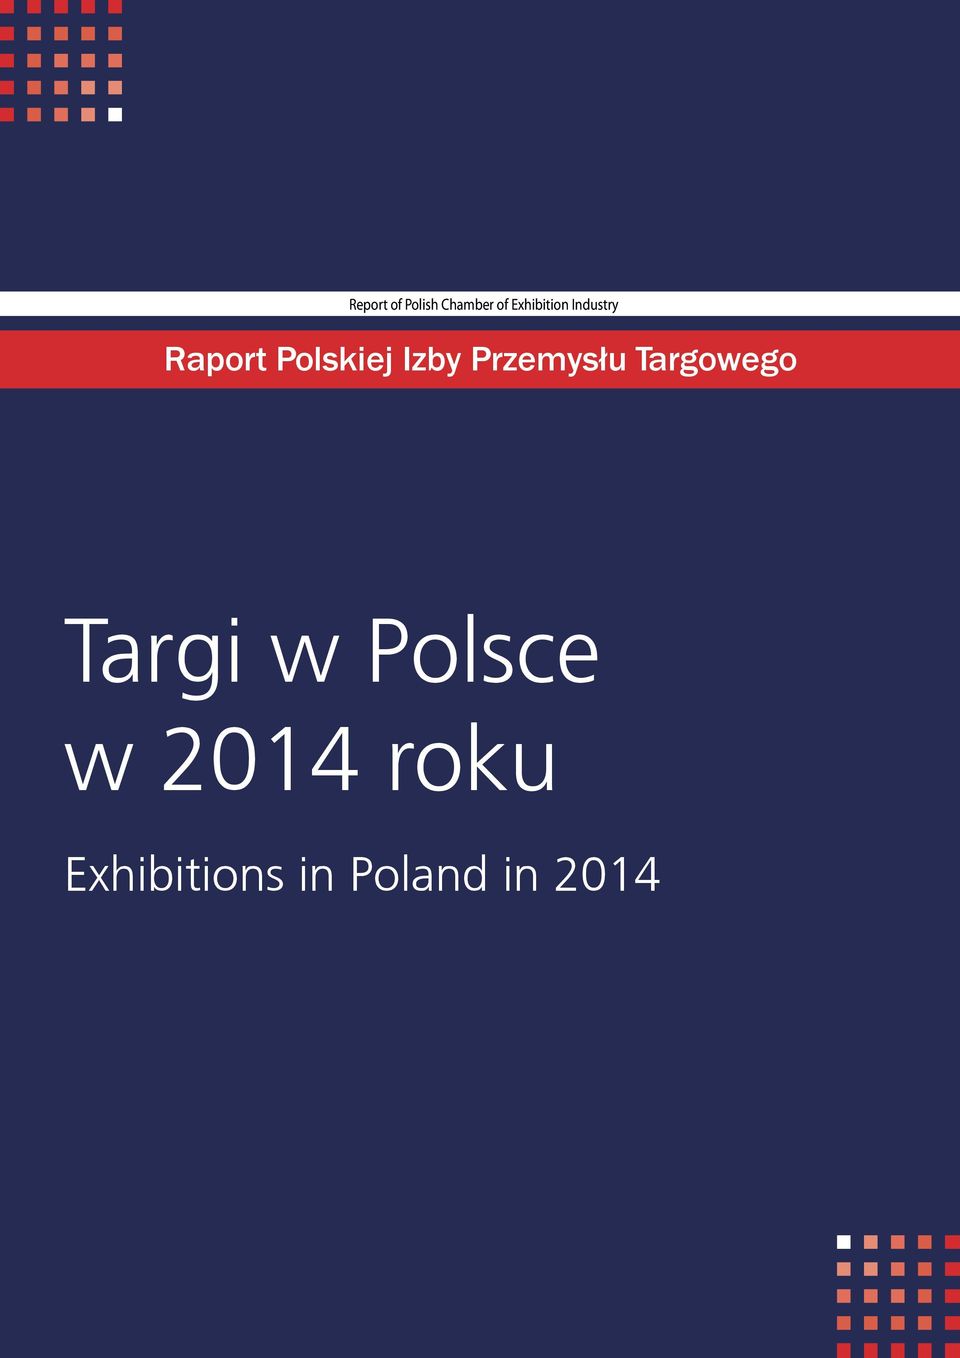 m) zagraniczni / foreign Zwiedzający Visitors Organizator Organizer Report of Polish Chamber of